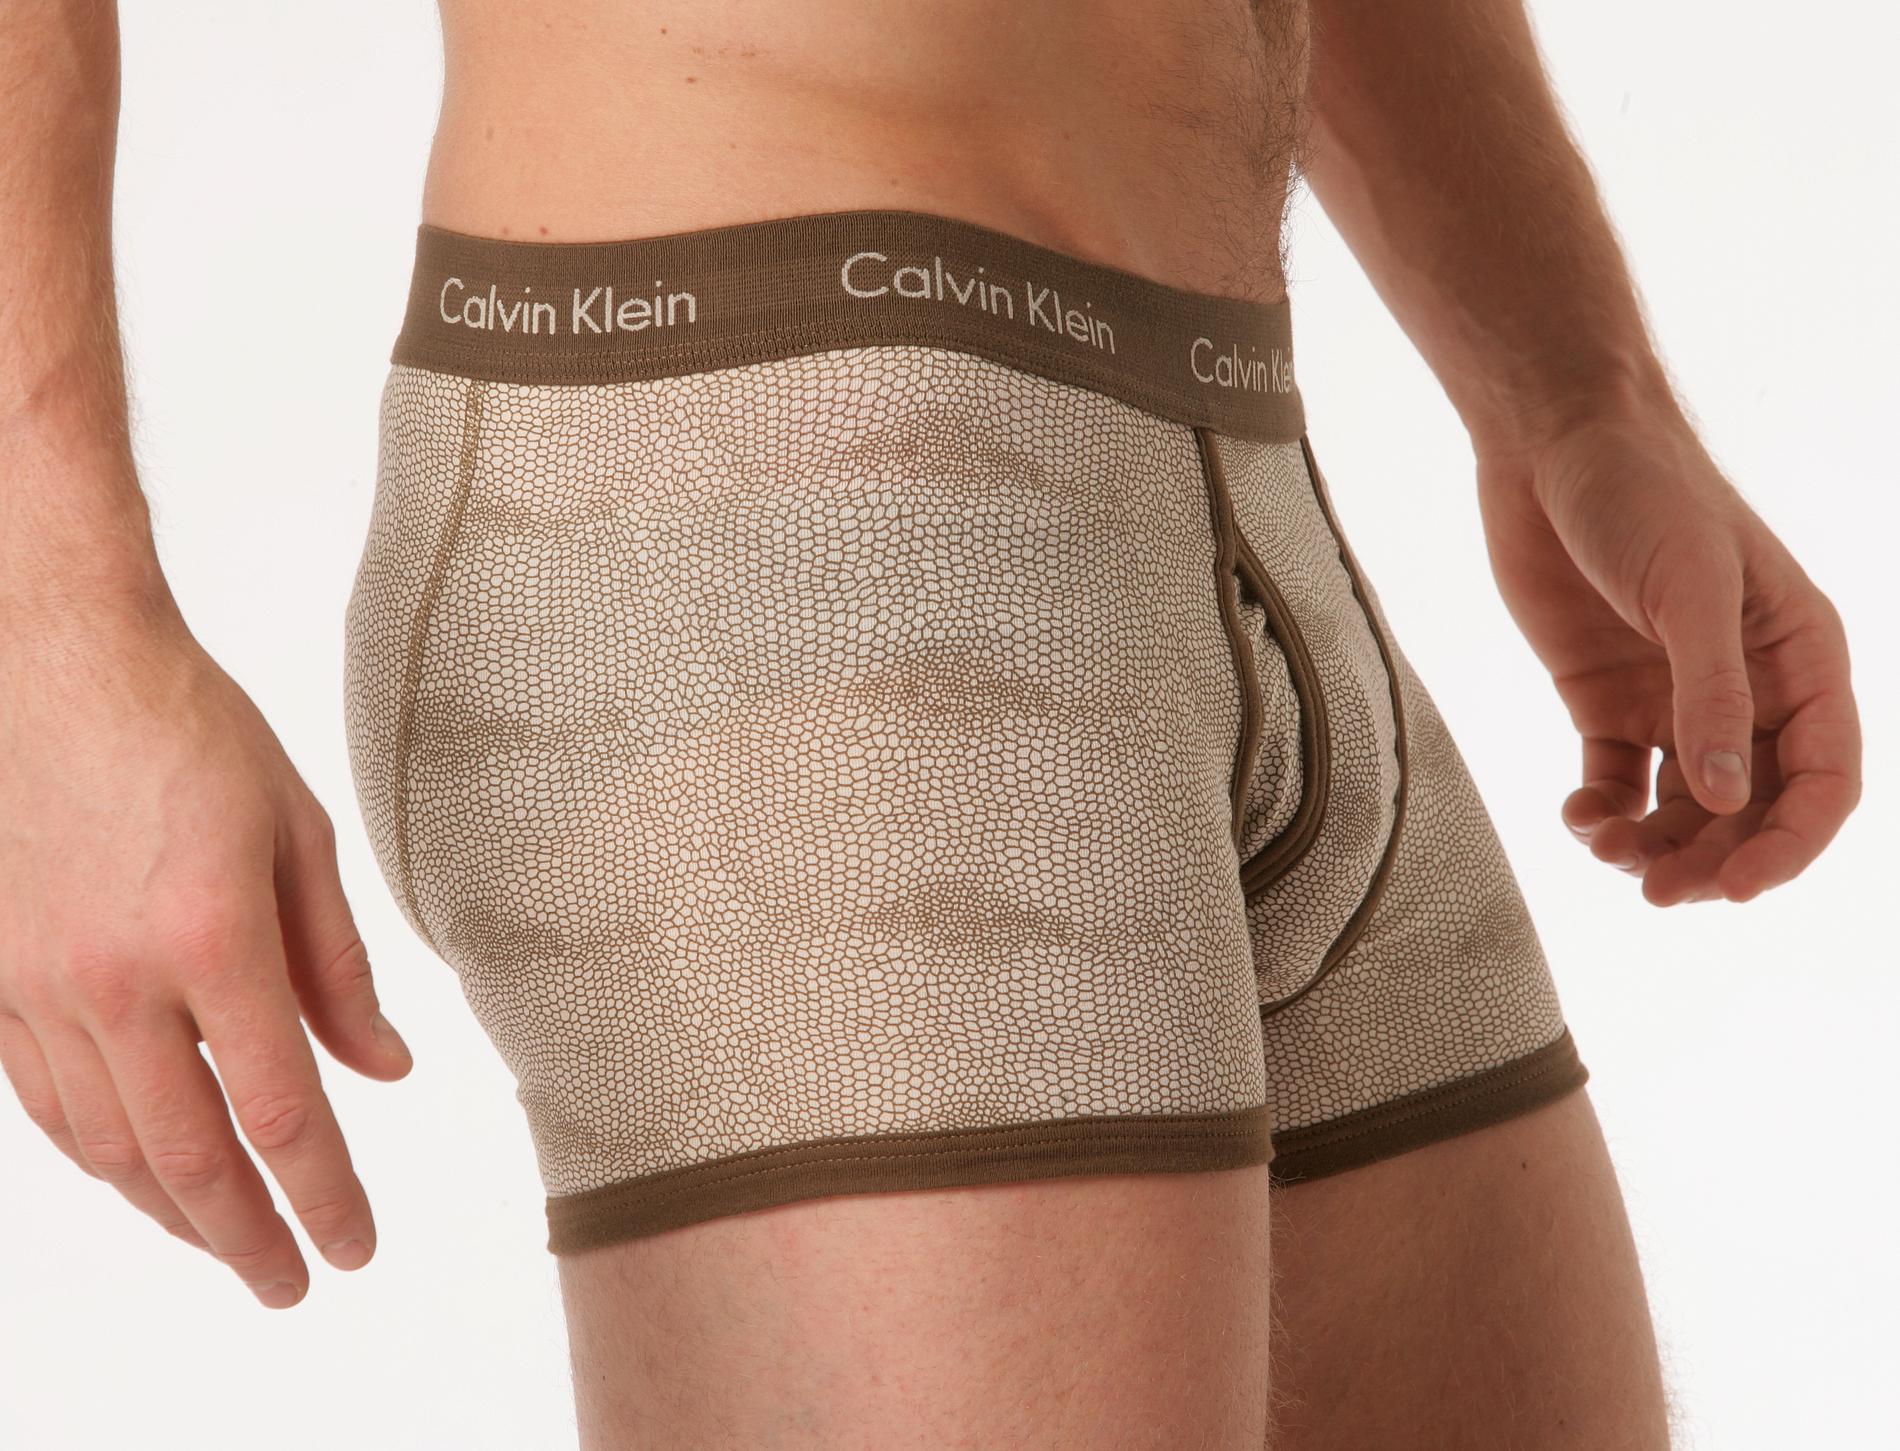 Jonas Lindberg stal kalsonger av märket Calvin Klein. Om det var just den här kalsongmodellen är dock oklart.